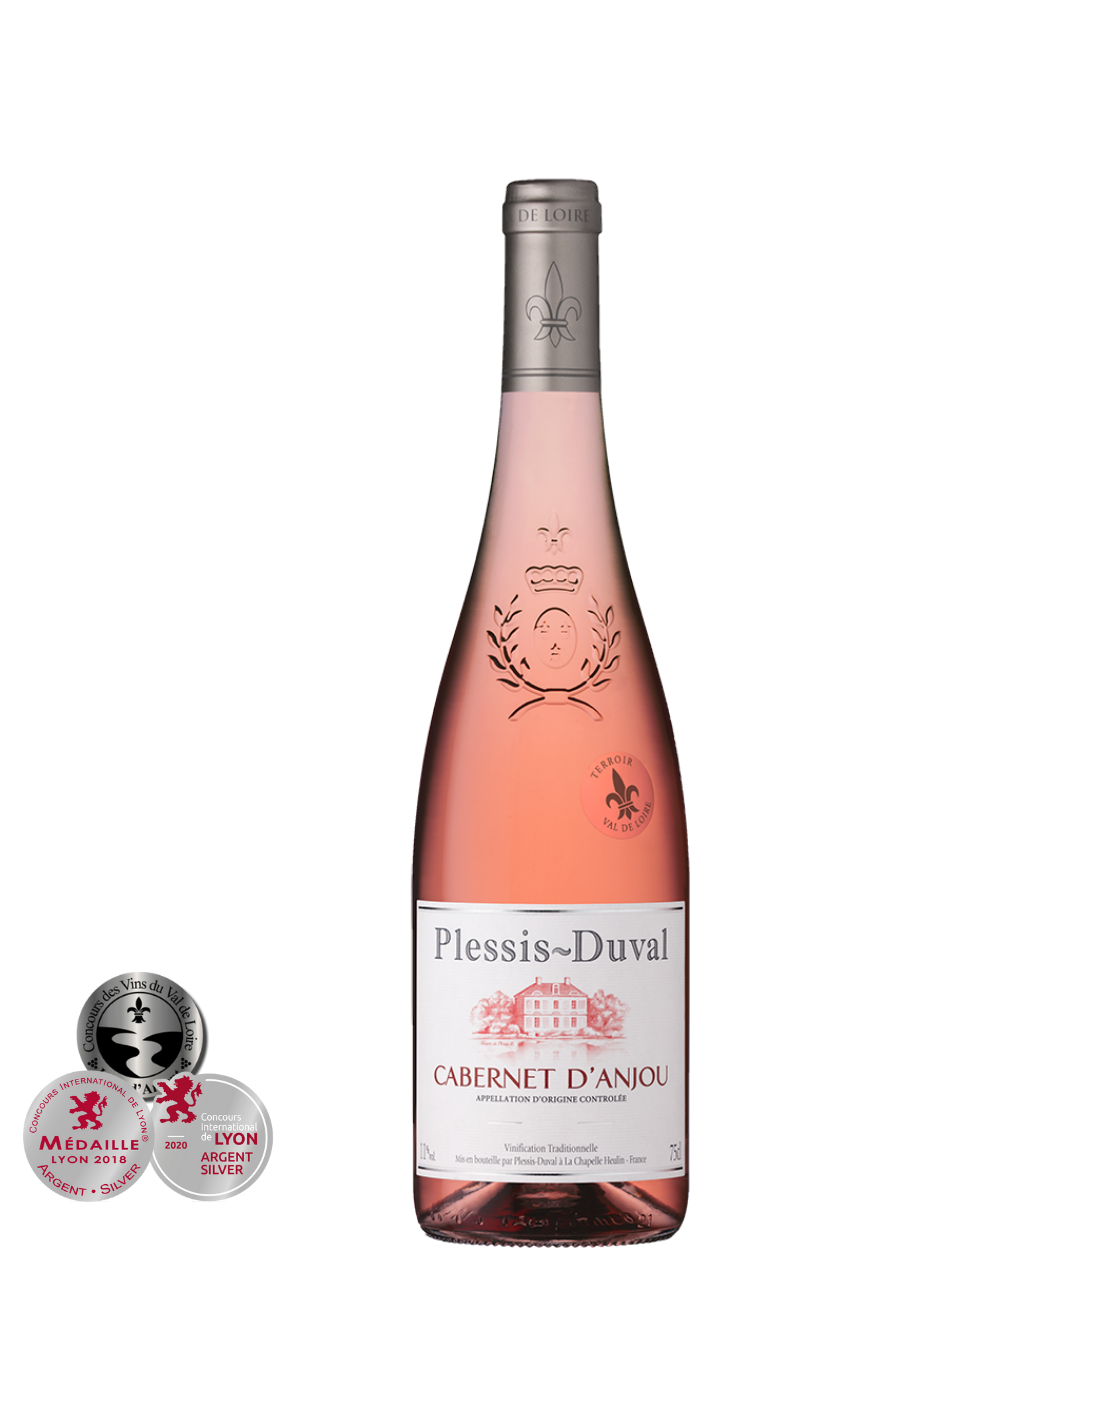 Vin roze sec Cabernet D’Anjou, Plessis Duval, 11% alc., 0.75L, Franta alcooldiscount.ro